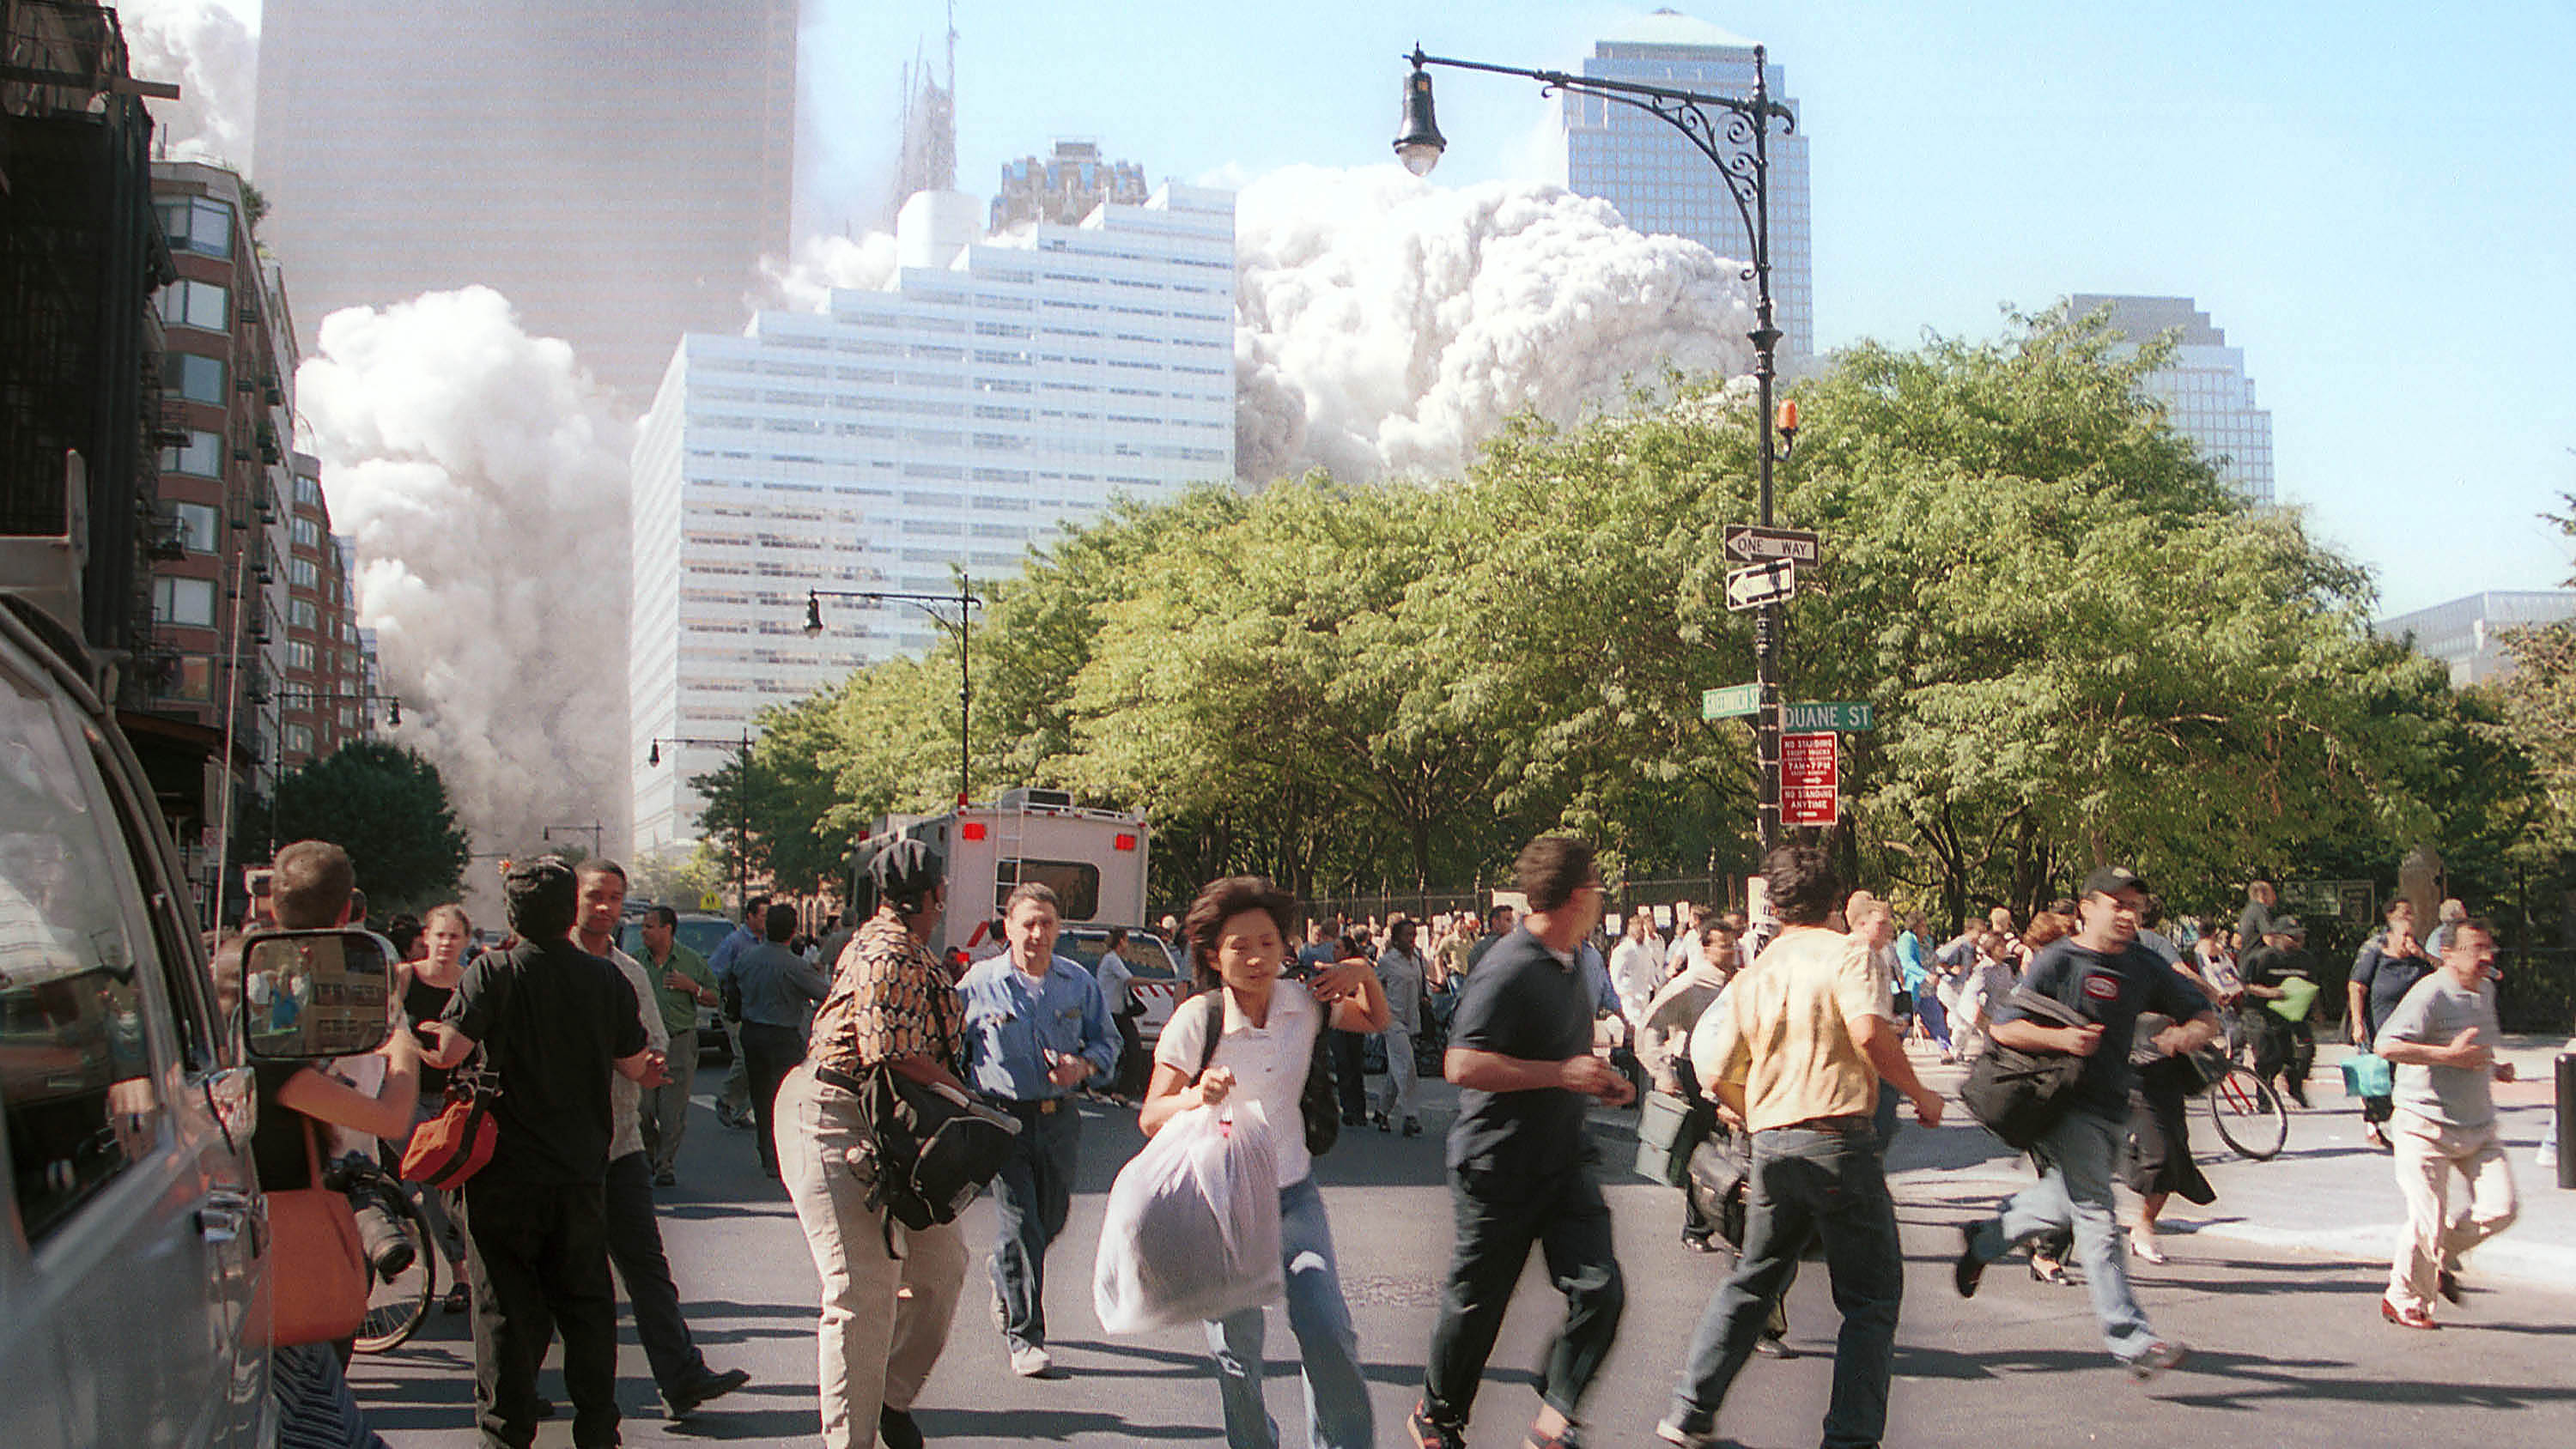 22 года назад террористы уничтожили башни-близнецы в США. Публикуем фото и видео, которые потрясли мир